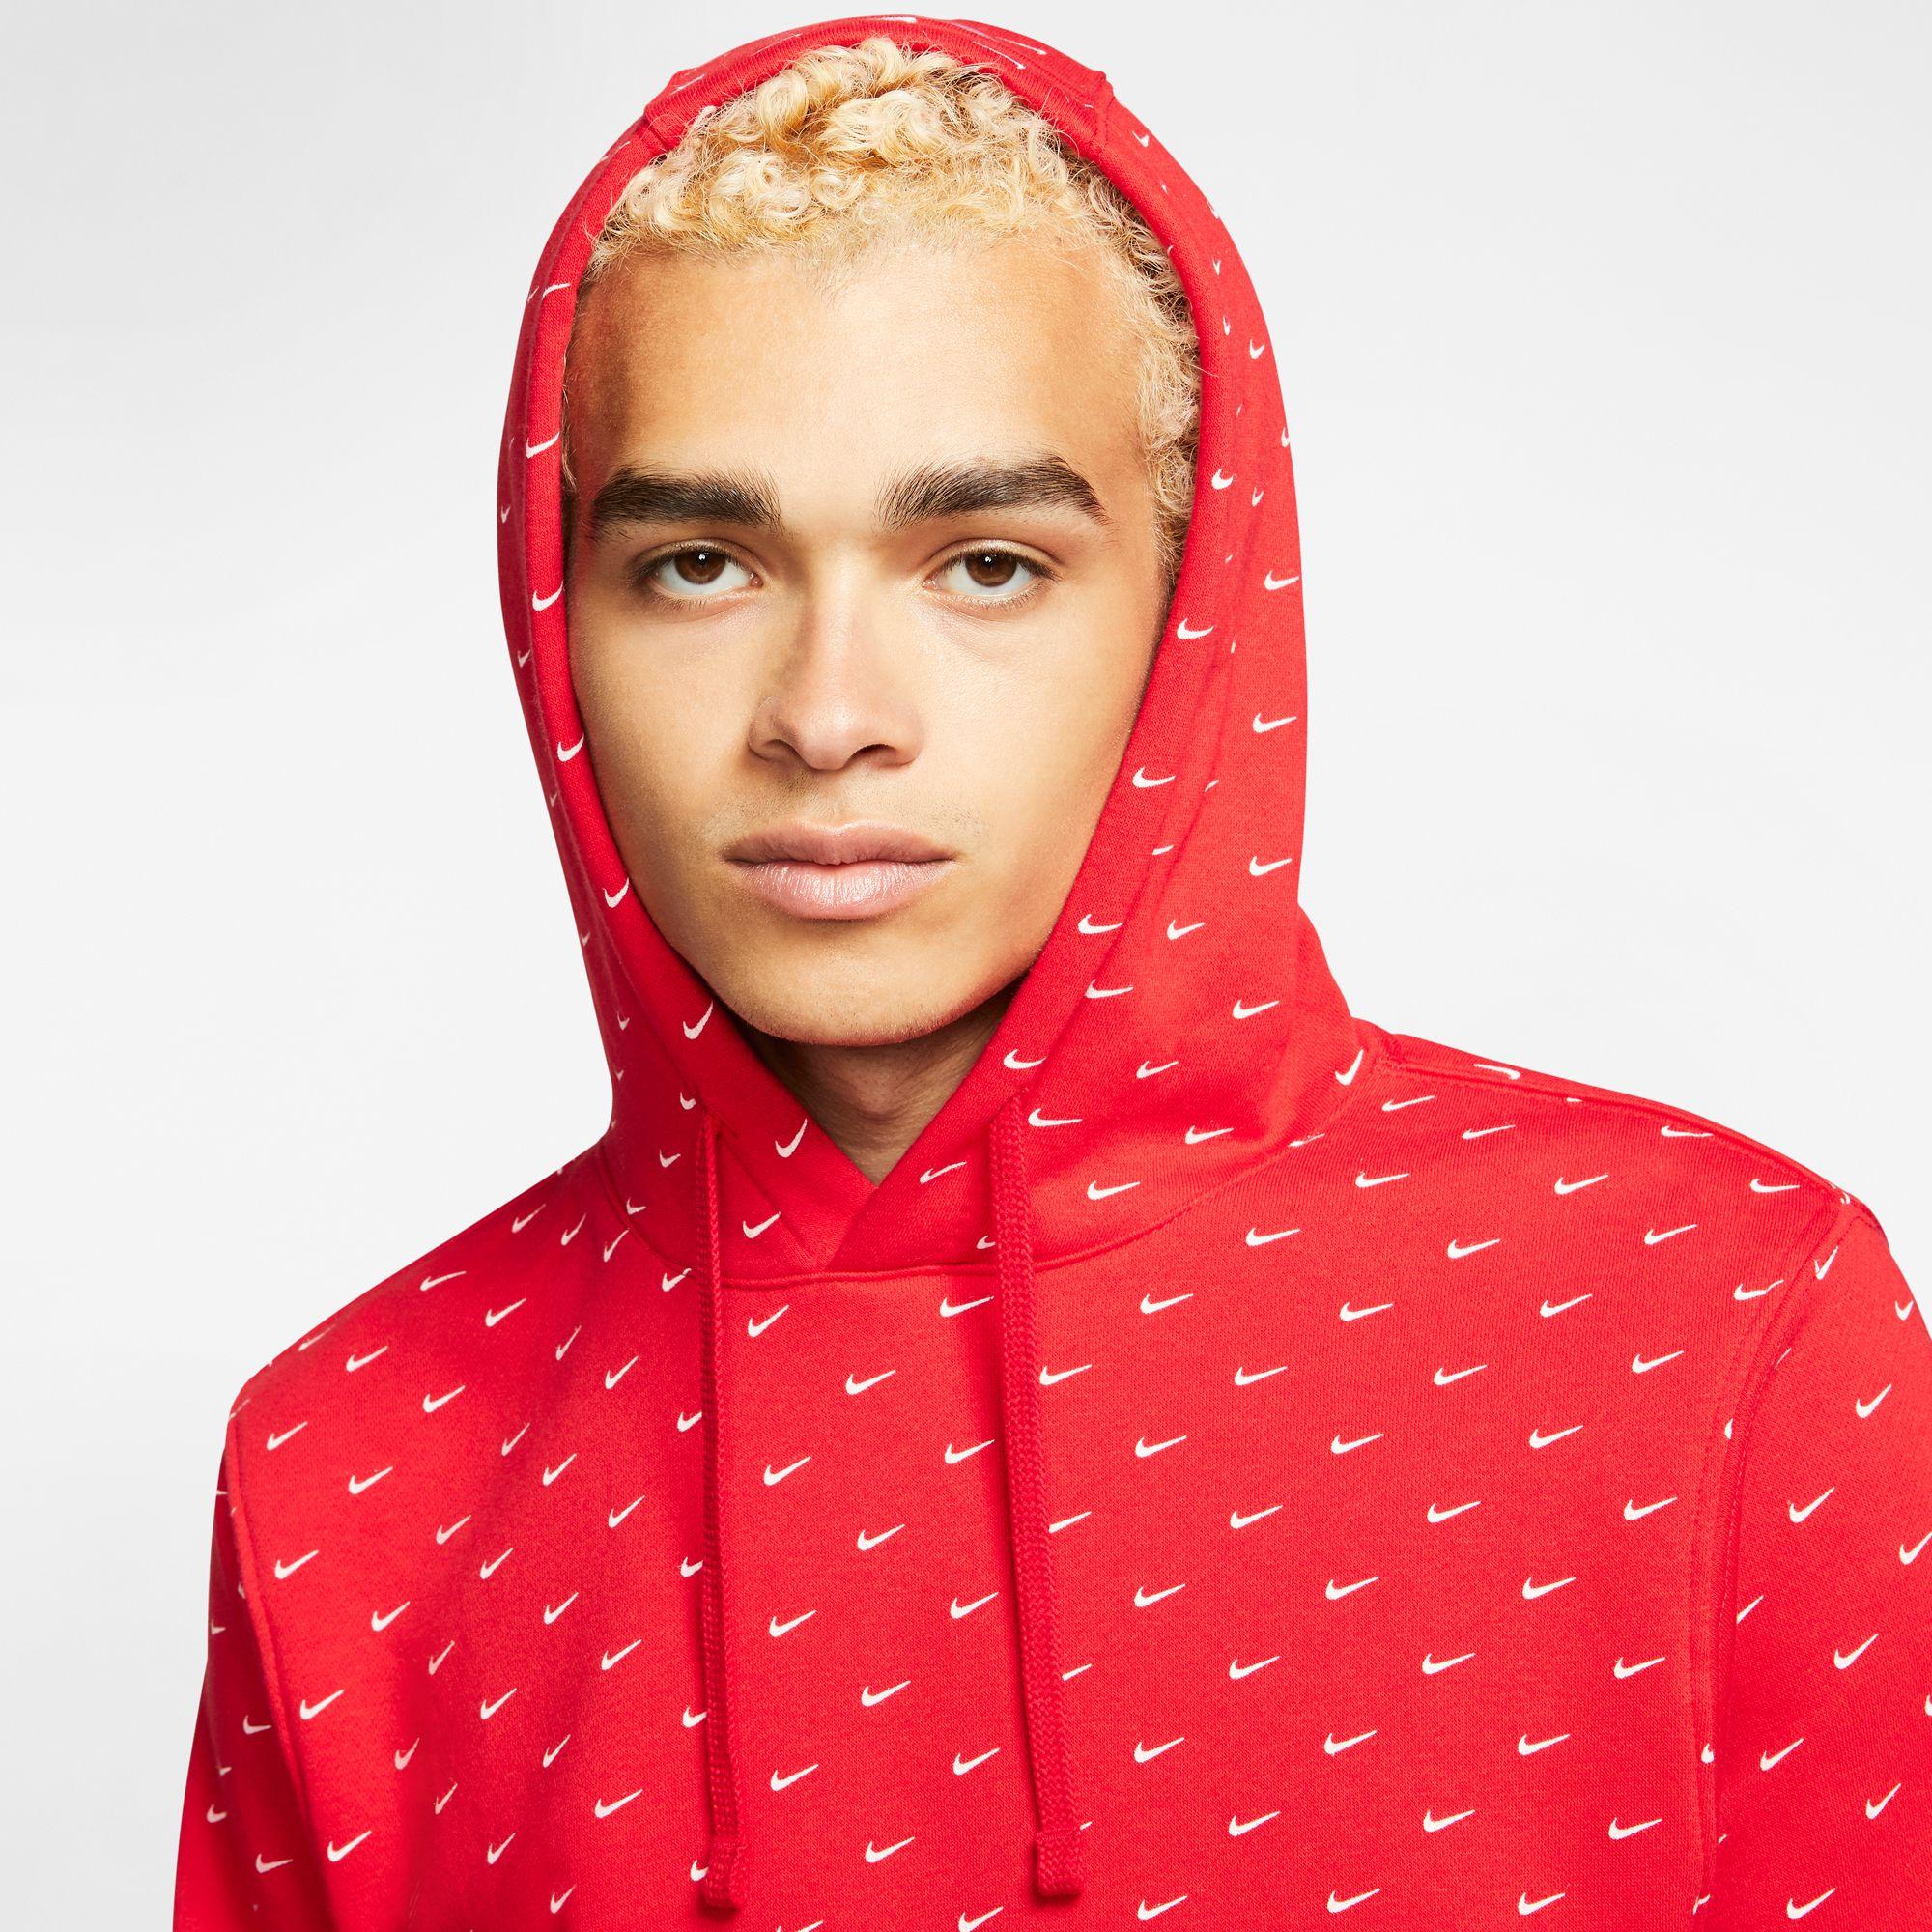 Nike Fleece Sportswear Swoosh Pullover Hoodie in University Red/White (Red)  for Men | Lyst